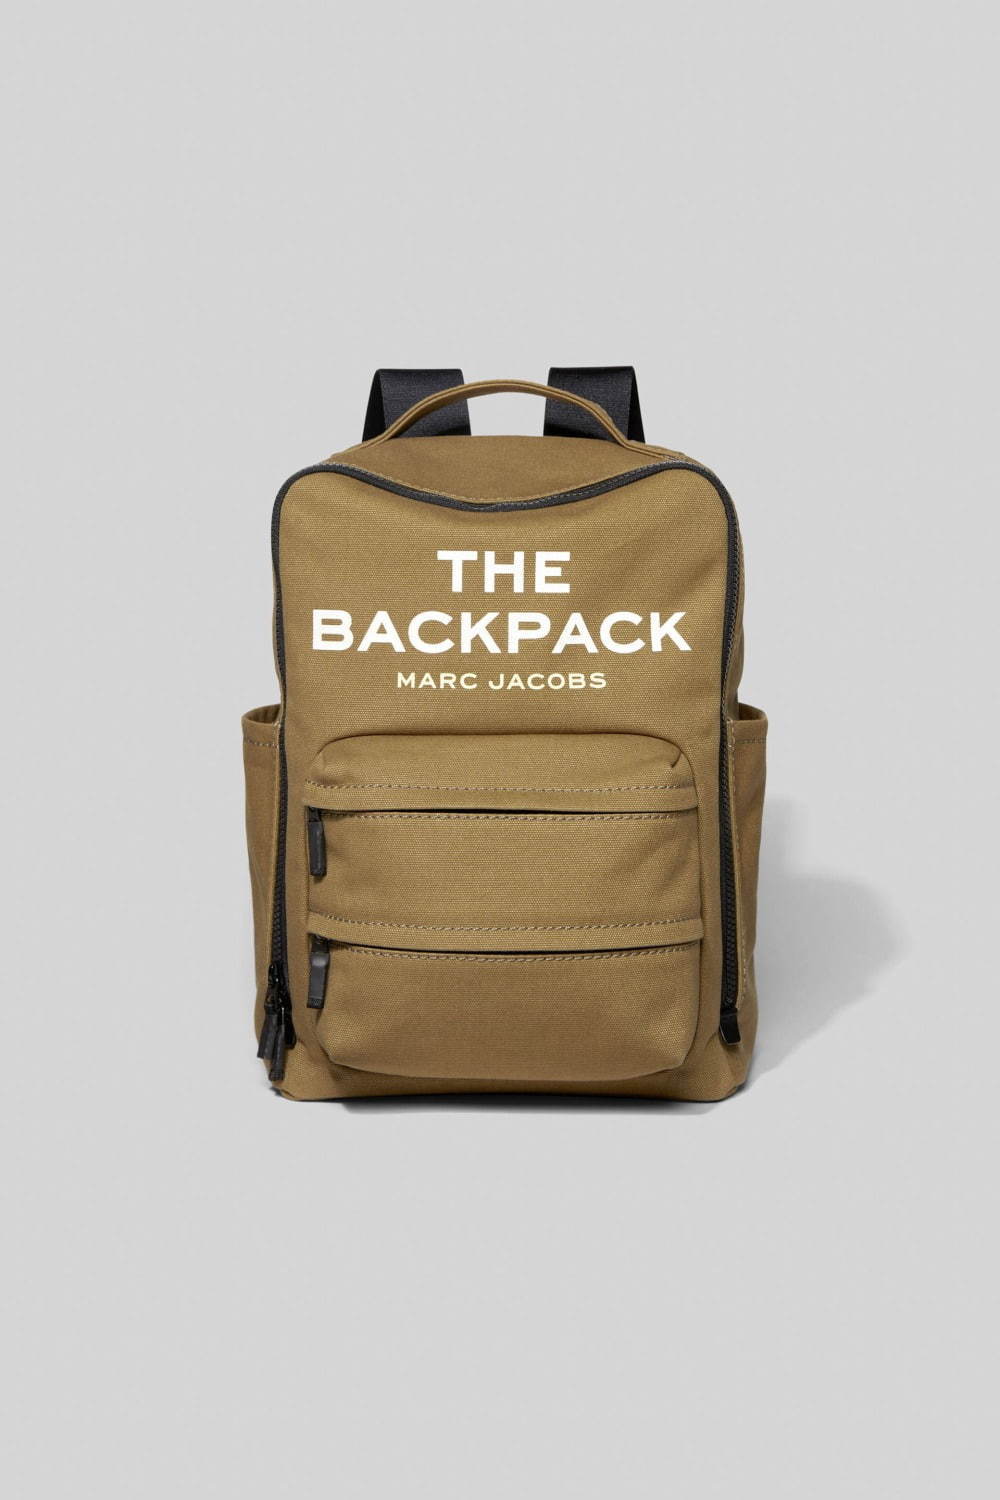 マーク ジェイコブス新作バッグパック「ザ バックパック」大きめロゴ 